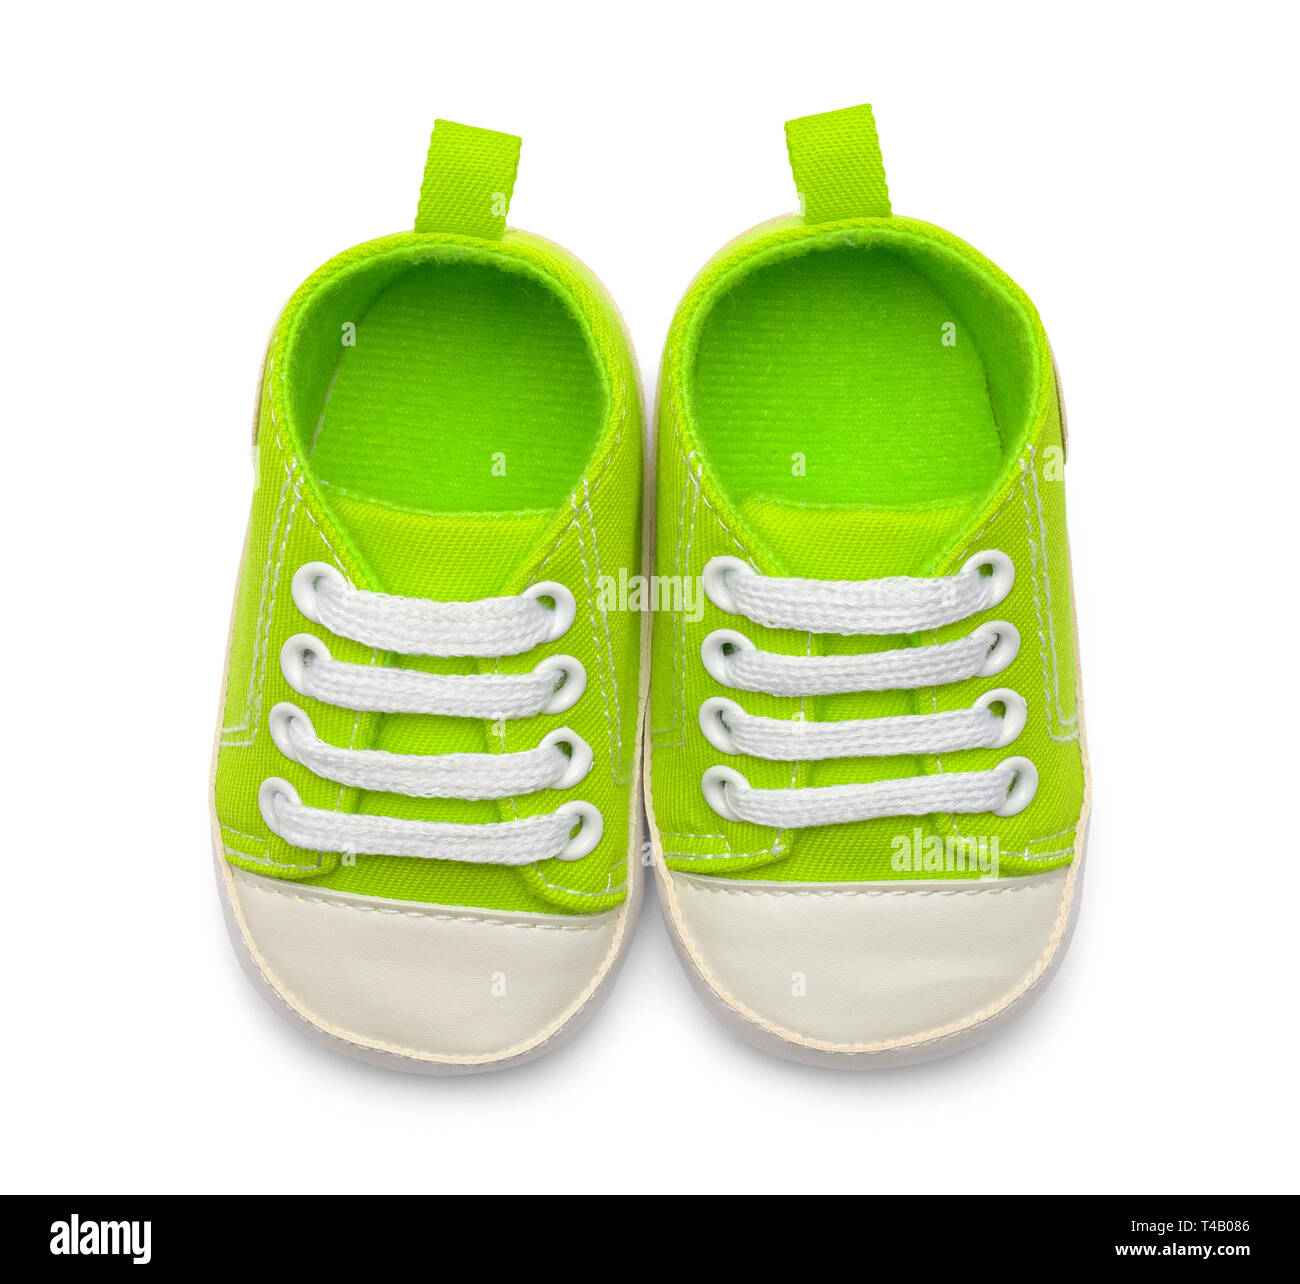 Paar grüne Baby Schuhe Top View isoliert auf weißem Hintergrund. Stockfoto